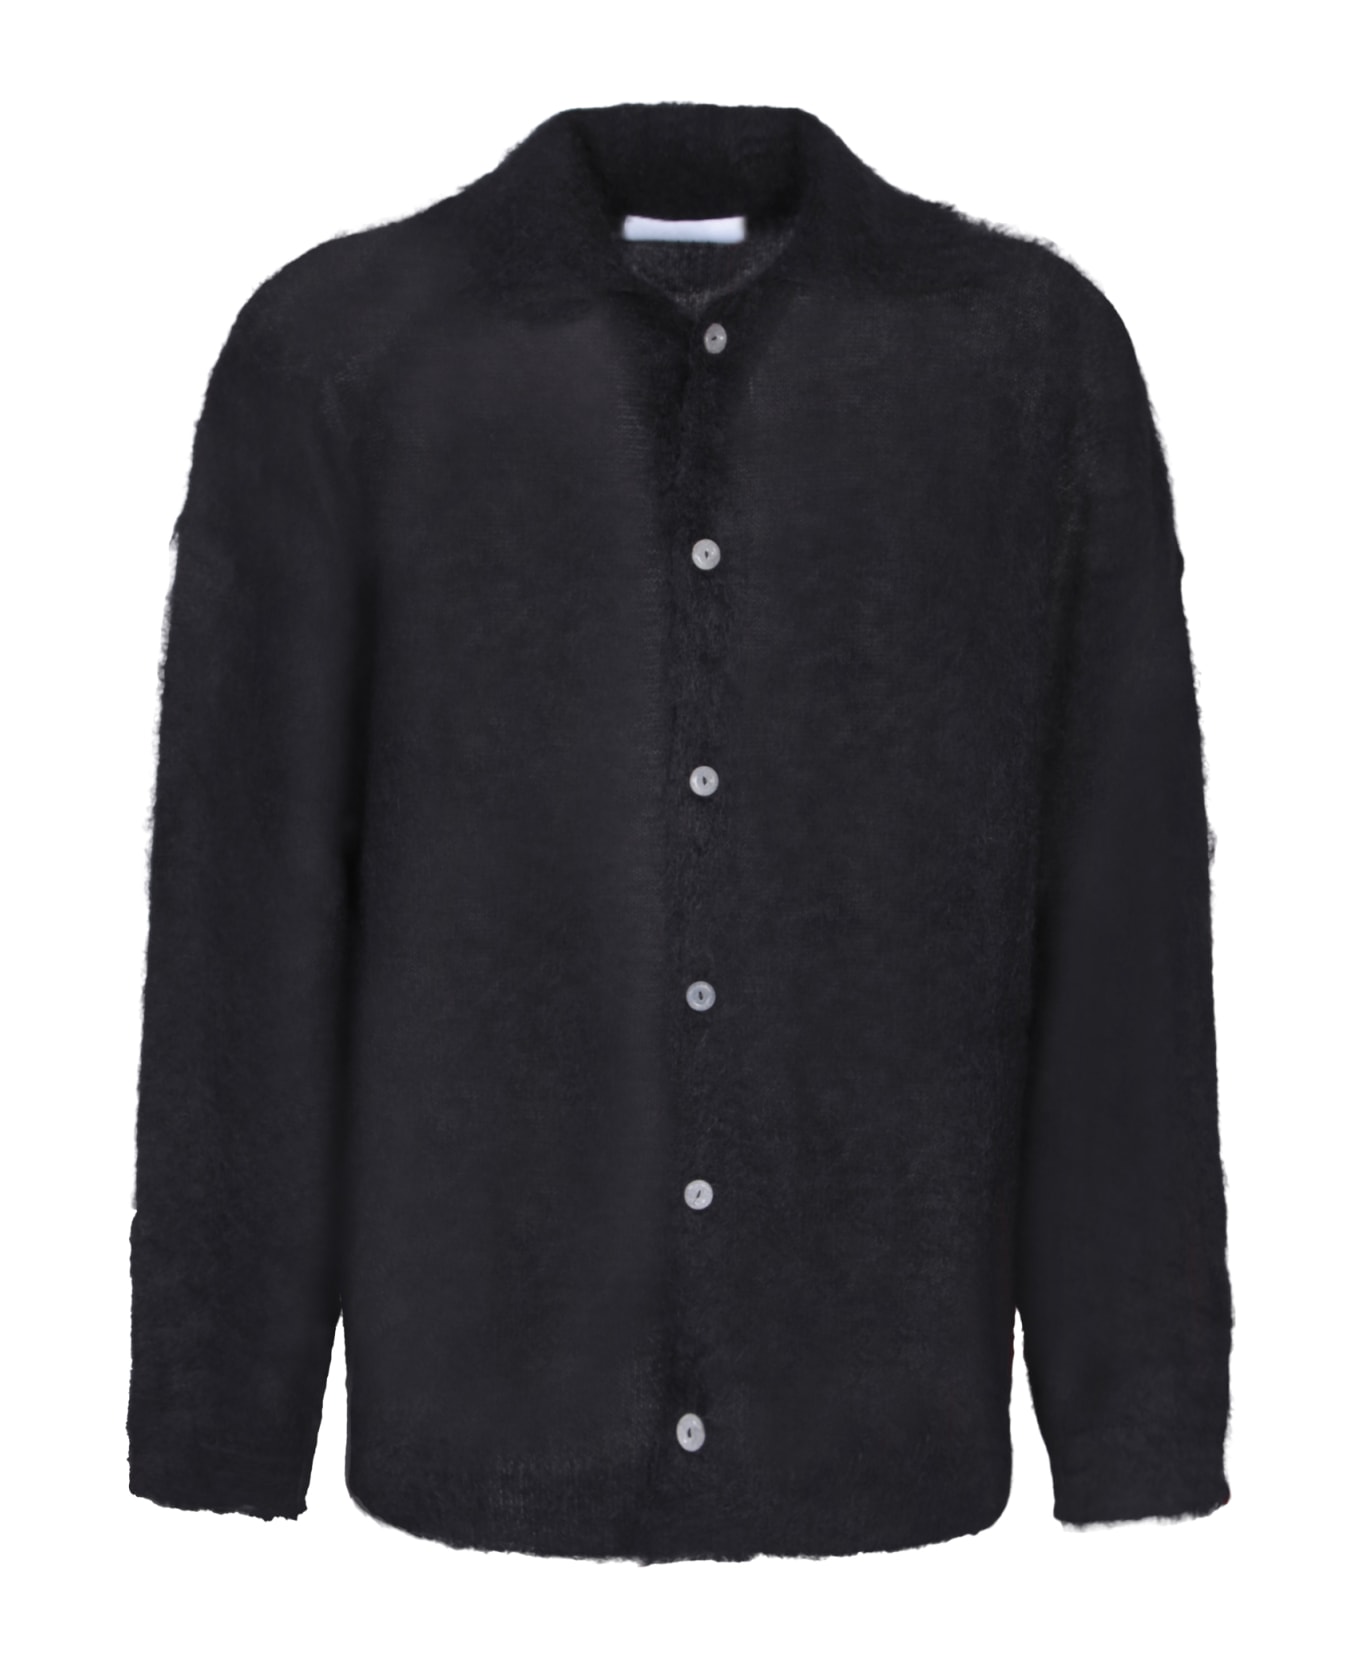 Bonsai Mohair Black Sweater-shirt - Black ニットウェア